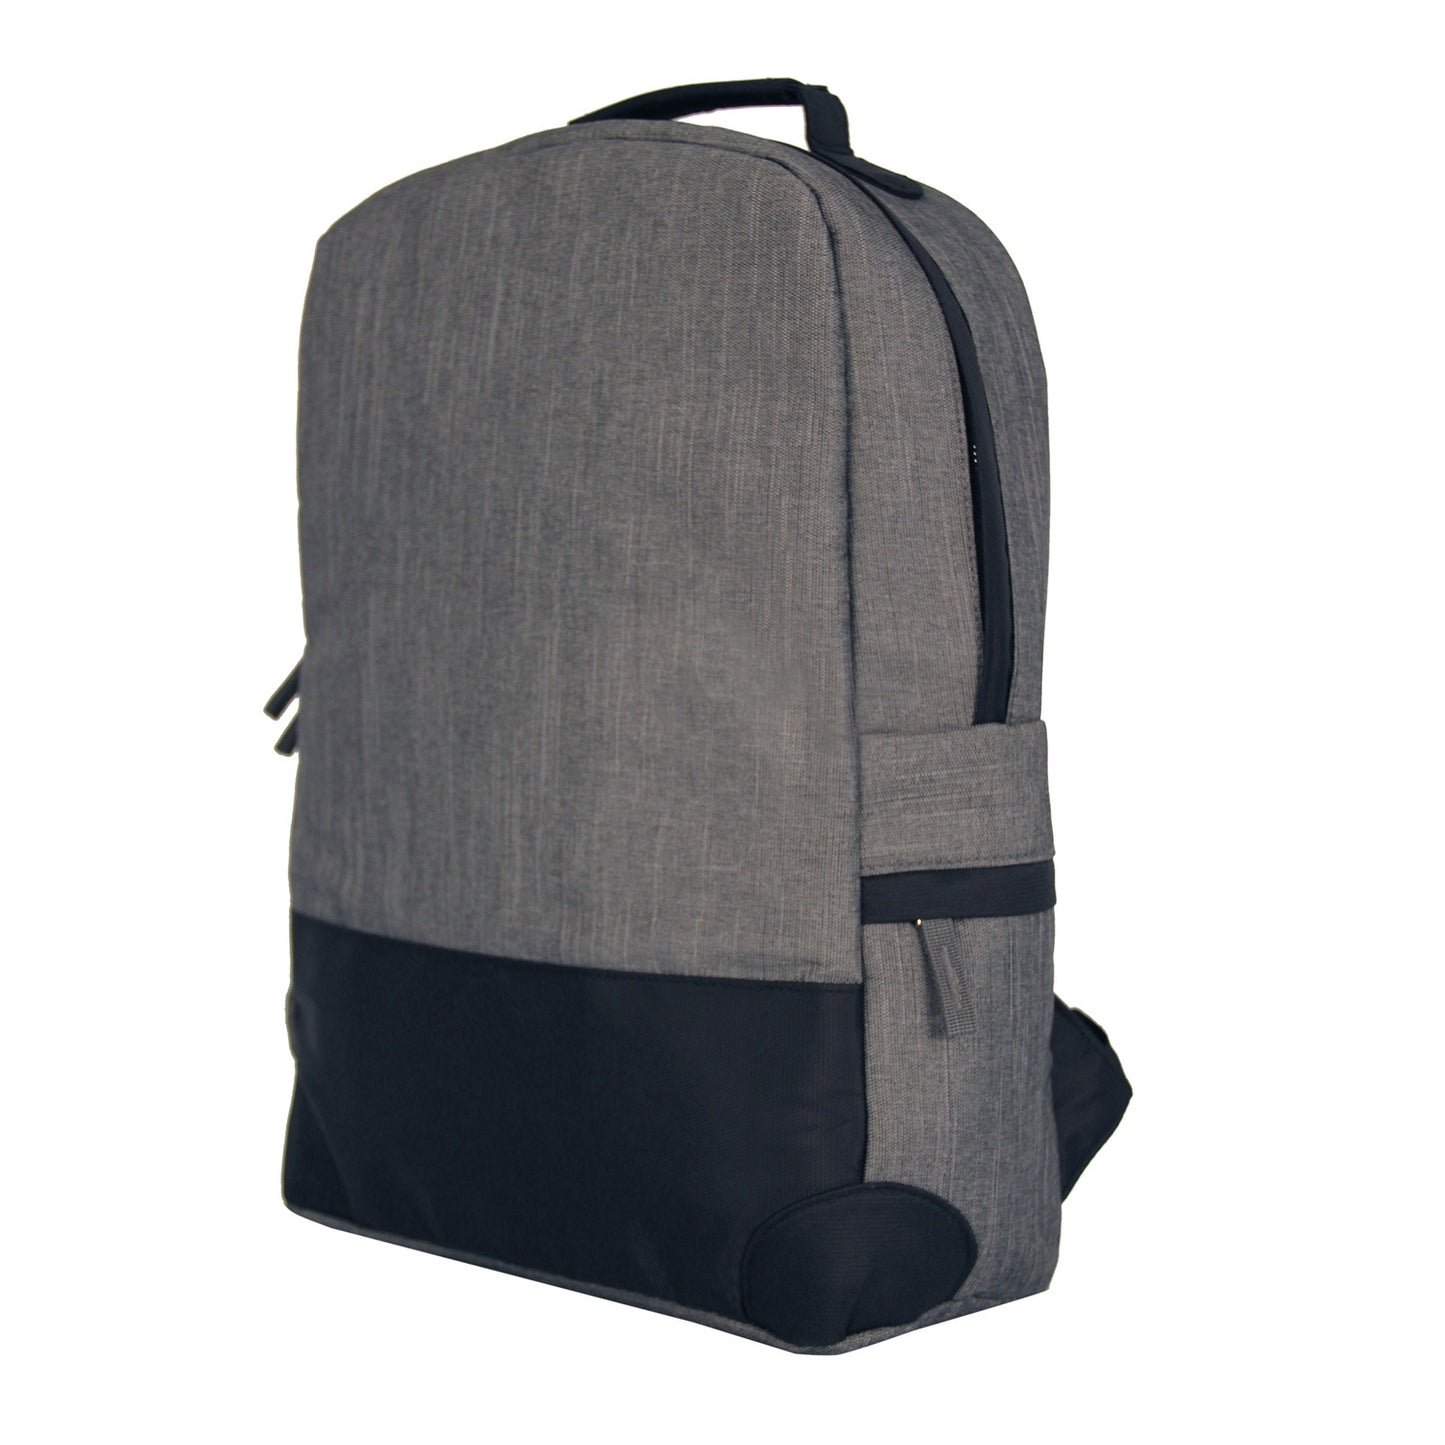 Misty Grey Backpack